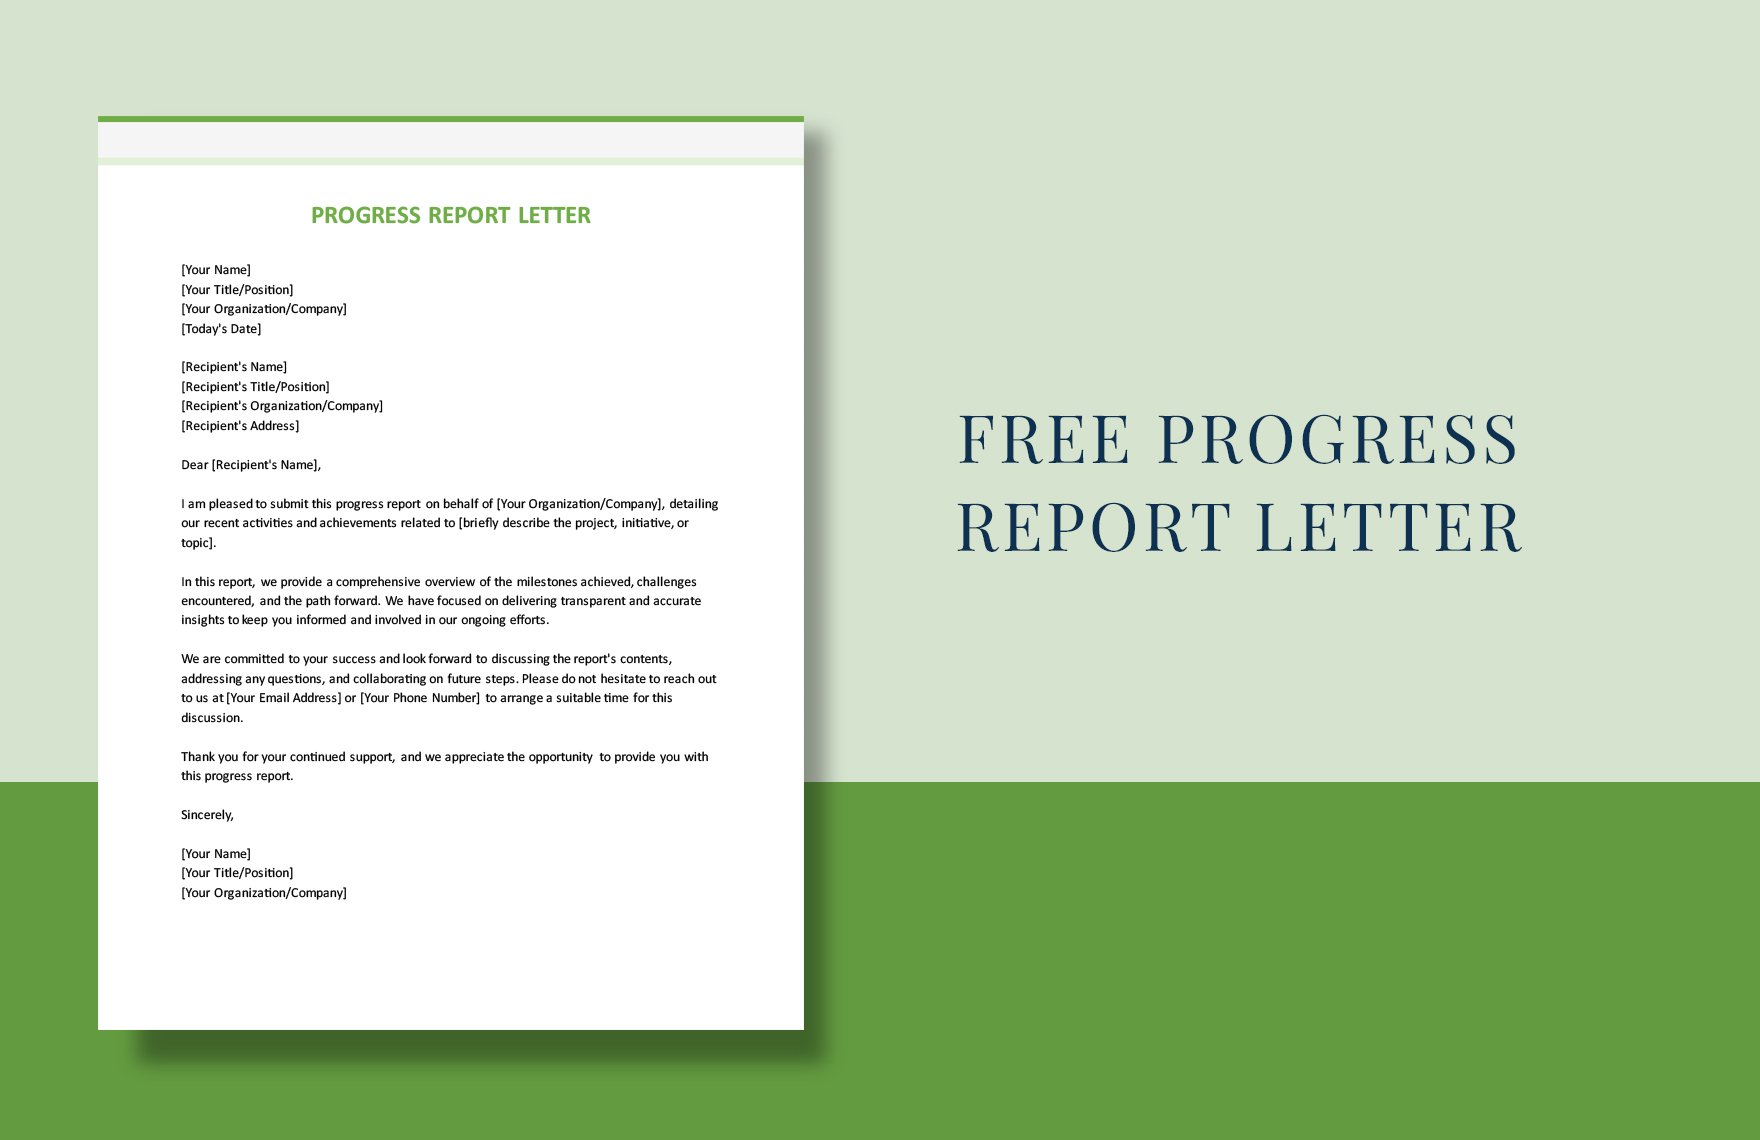 Progress Report Letter